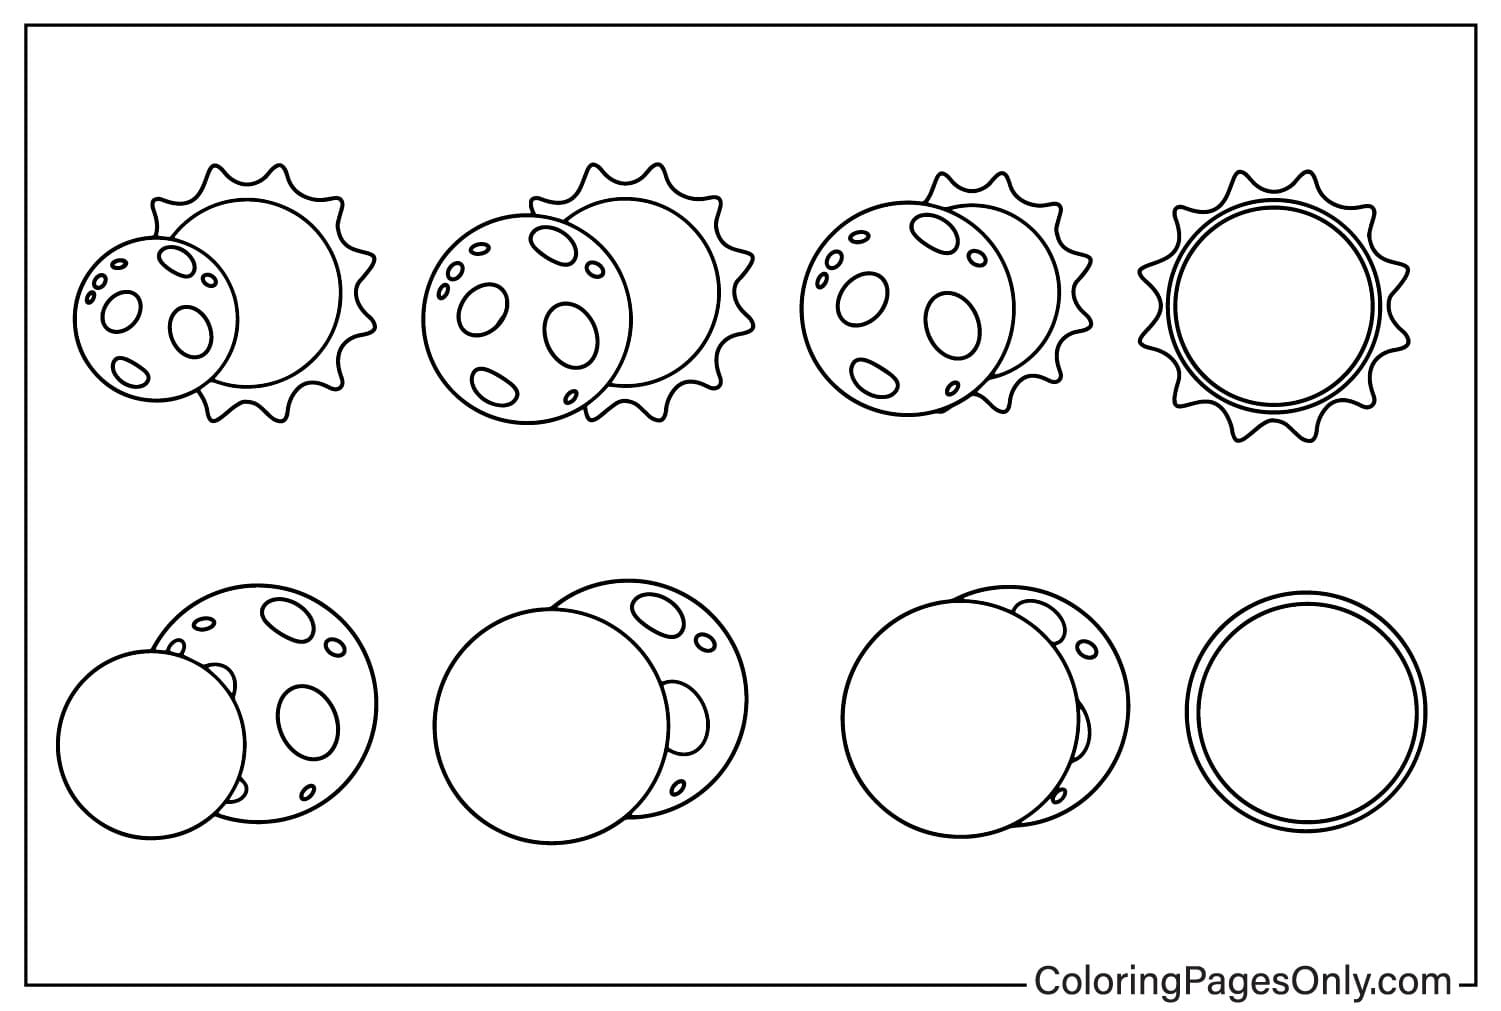 Pagina da colorare di Eclissi per bambini da Eclissi solare